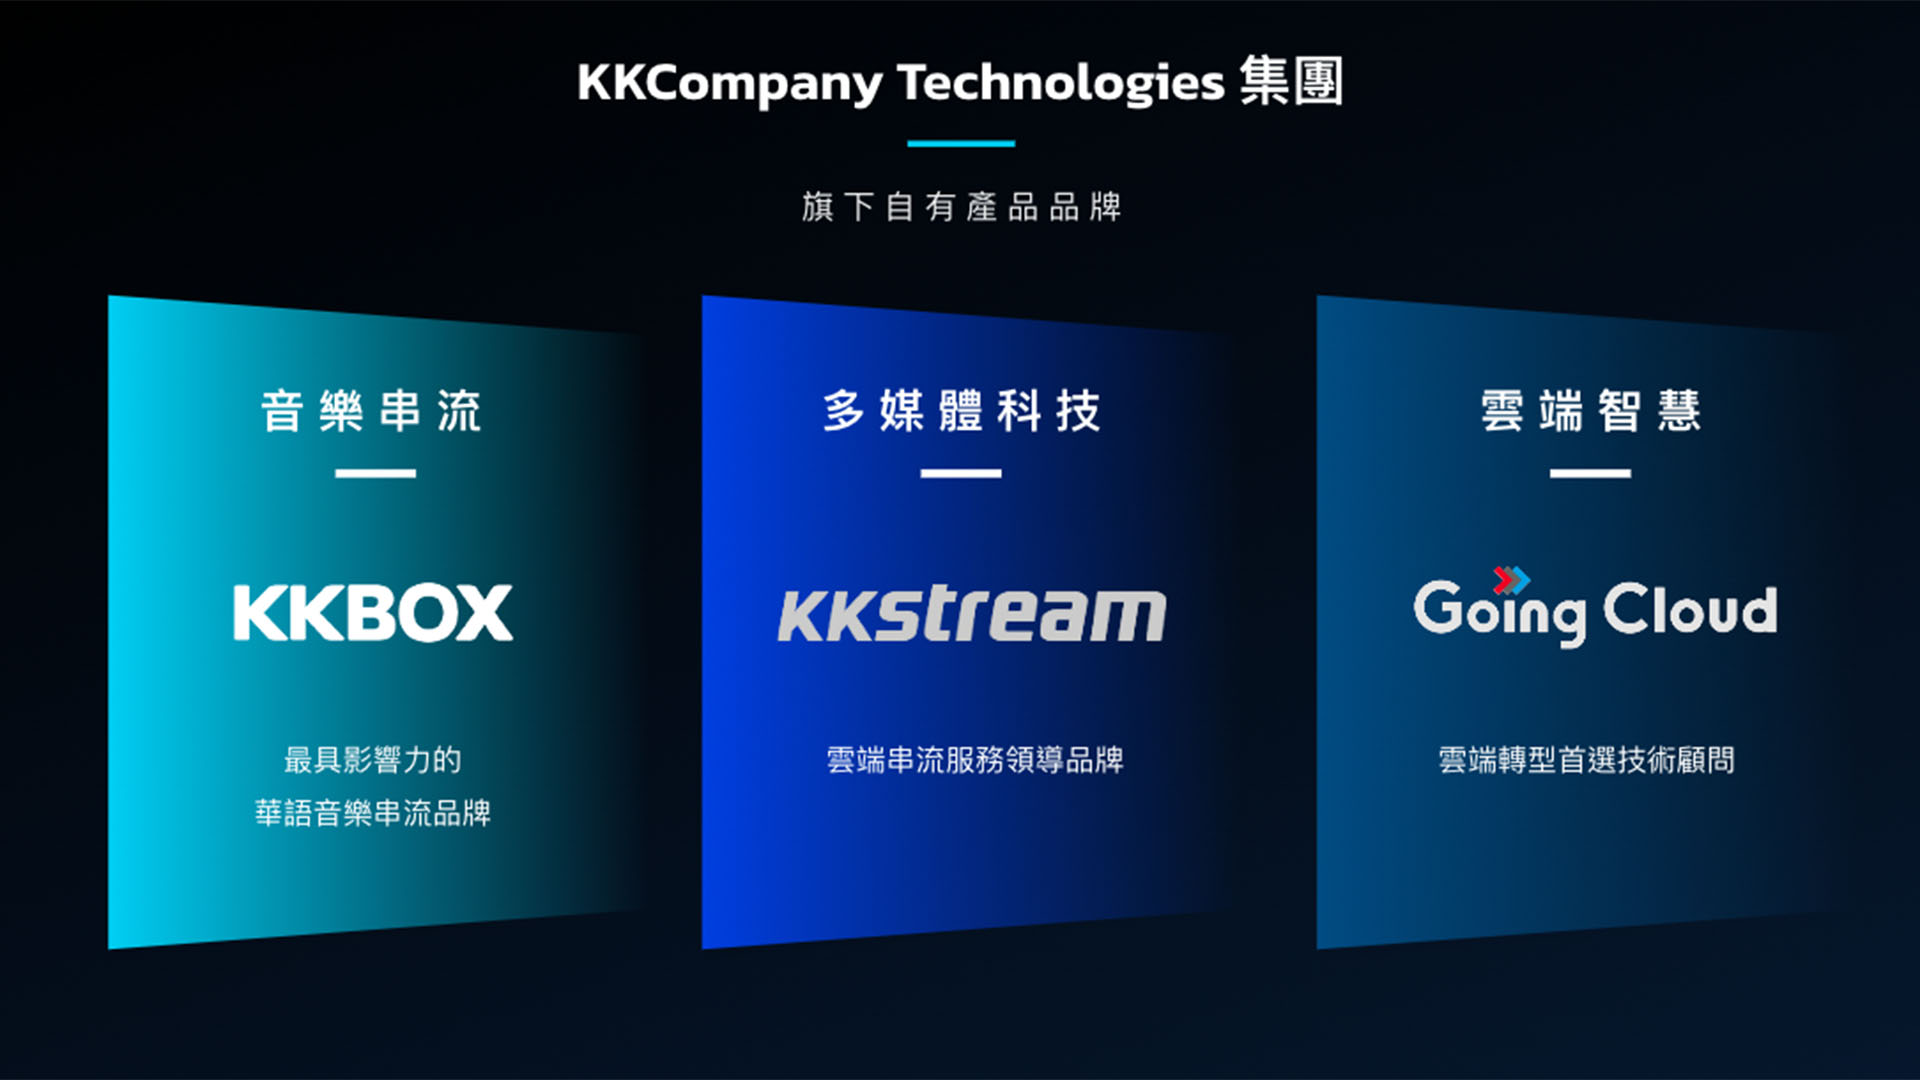 【新聞素材一】kkcompany Technologies 集團為軟體服務領航者，旗下包含 Kkbox、kkstream、going Cloud 等三大自有產品品牌。 拷貝